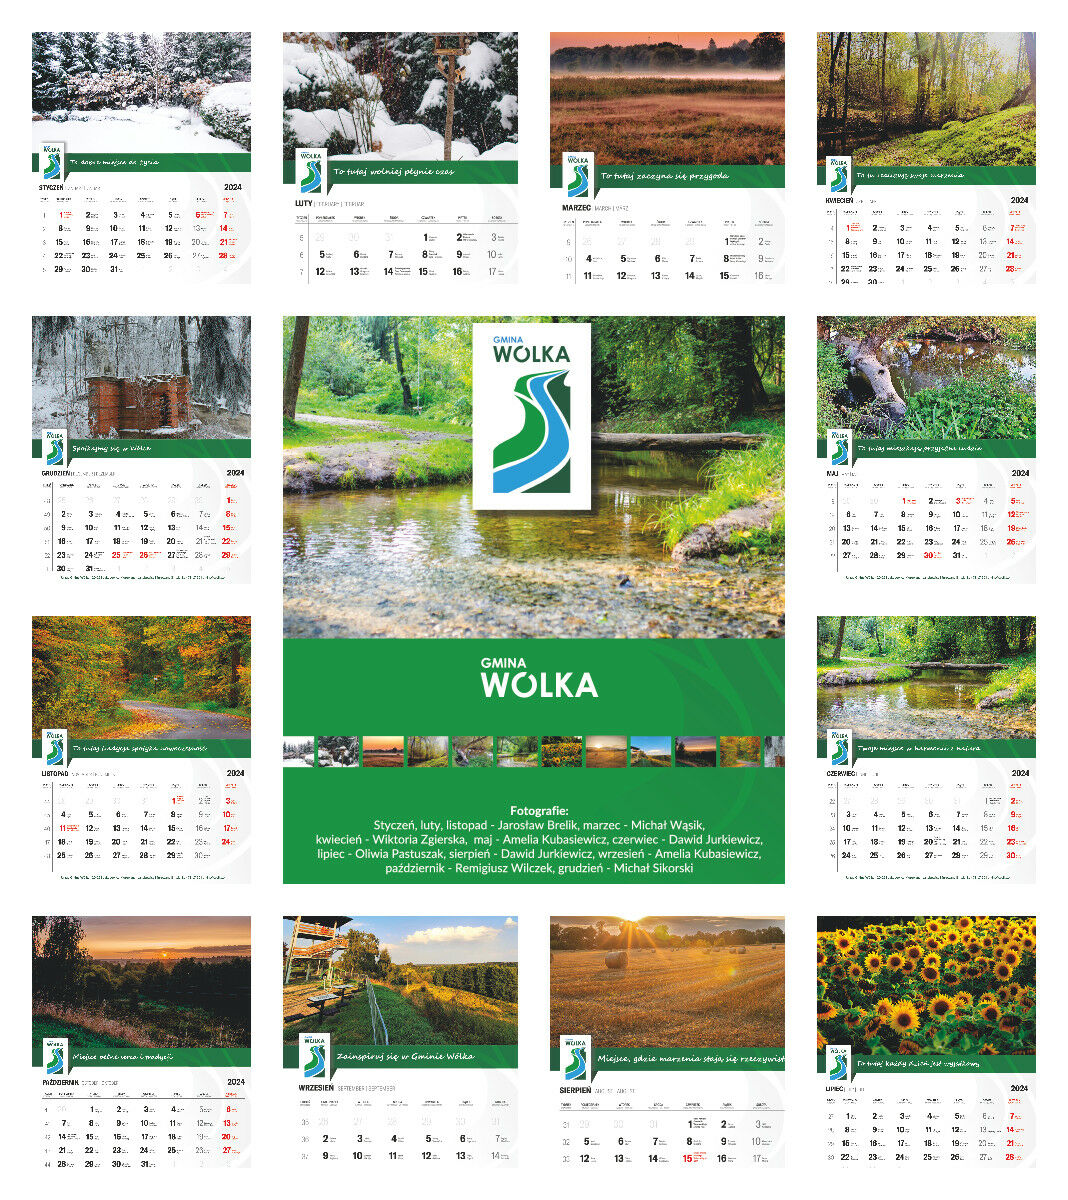 Zdjęcie przedstawia kalendarz z 12 różnymi zdjęciami przyrodniczymi na każdy miesiąc. Sceny zawierają krajobrazy, takie jak pokryte śniegiem drzewa, rzekę, łąkę, oraz kwiaty. Na środku znajduje się herb miejscowości.